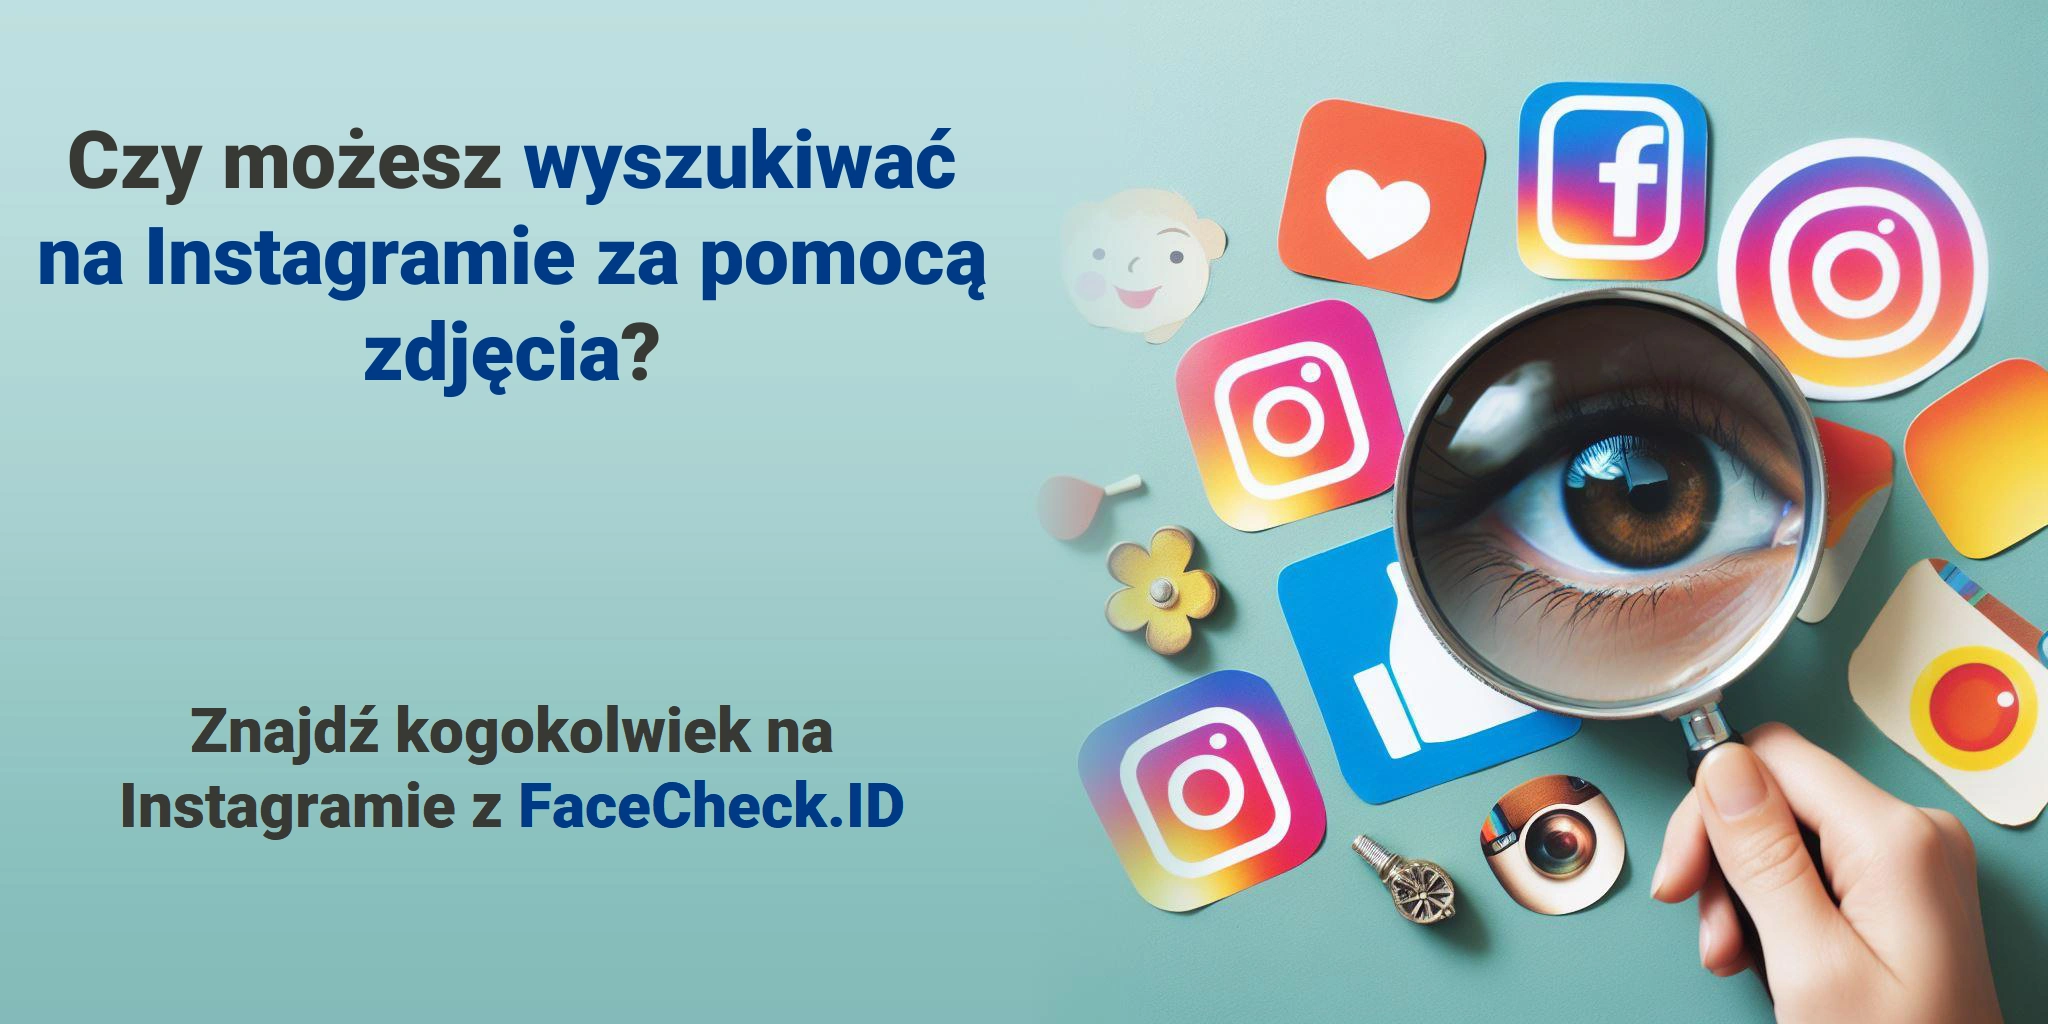 Czy możesz wyszukiwać na Instagramie za pomocą zdjęcia? Znajdź kogokolwiek na Instagramie z FaceCheck.ID